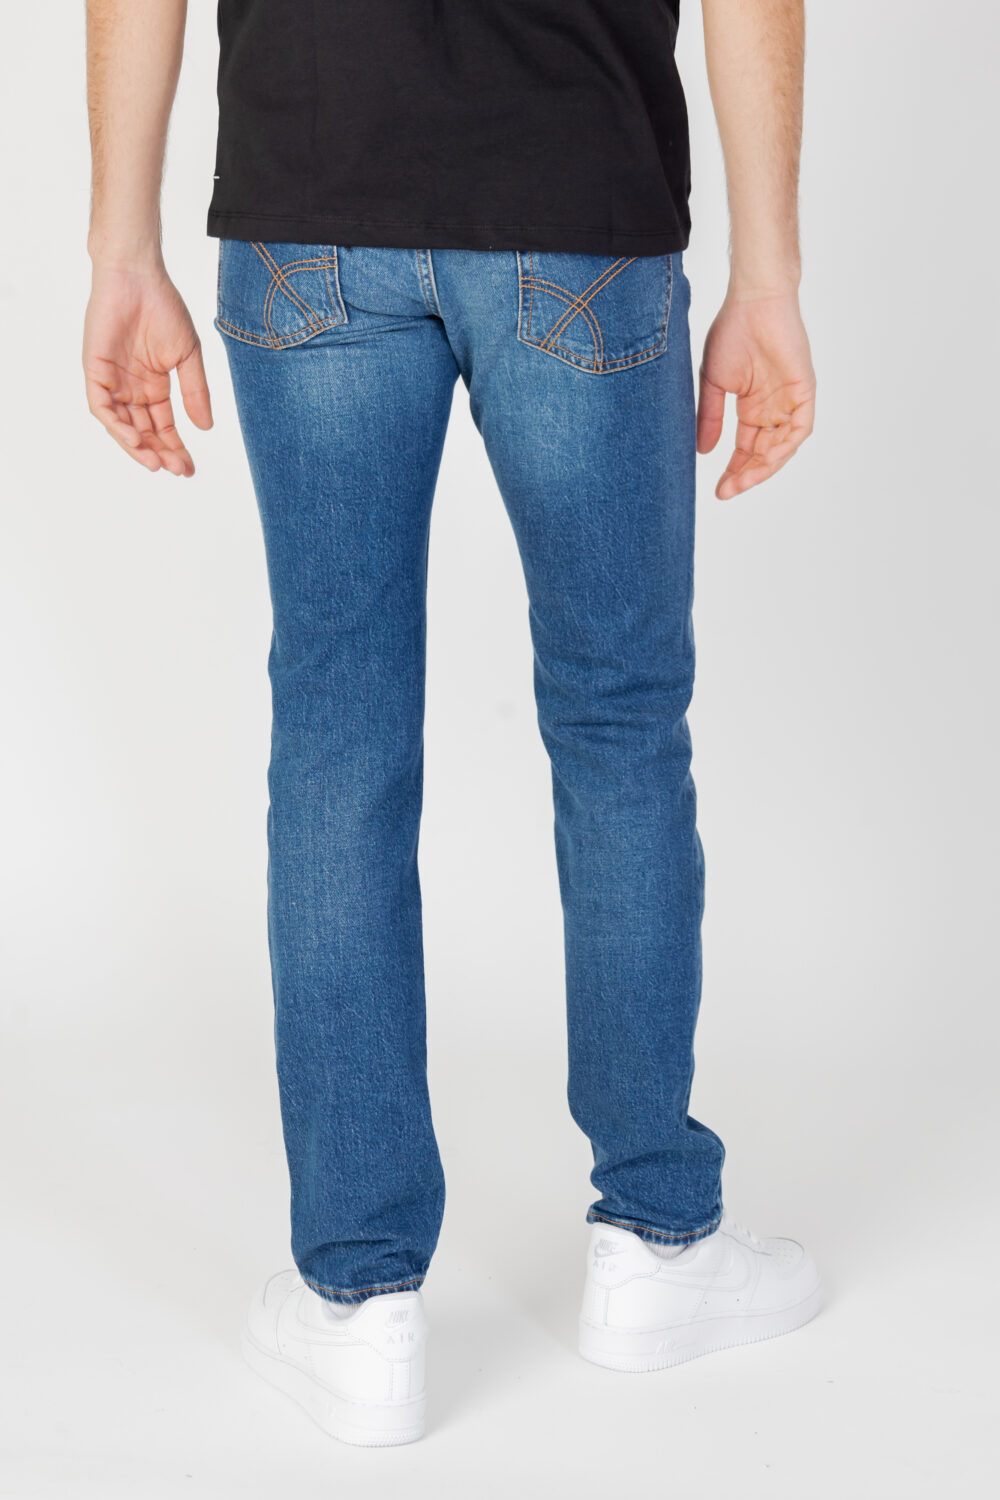 Jeans GAS ALBERT SIMPLE REV Denim - Foto 3